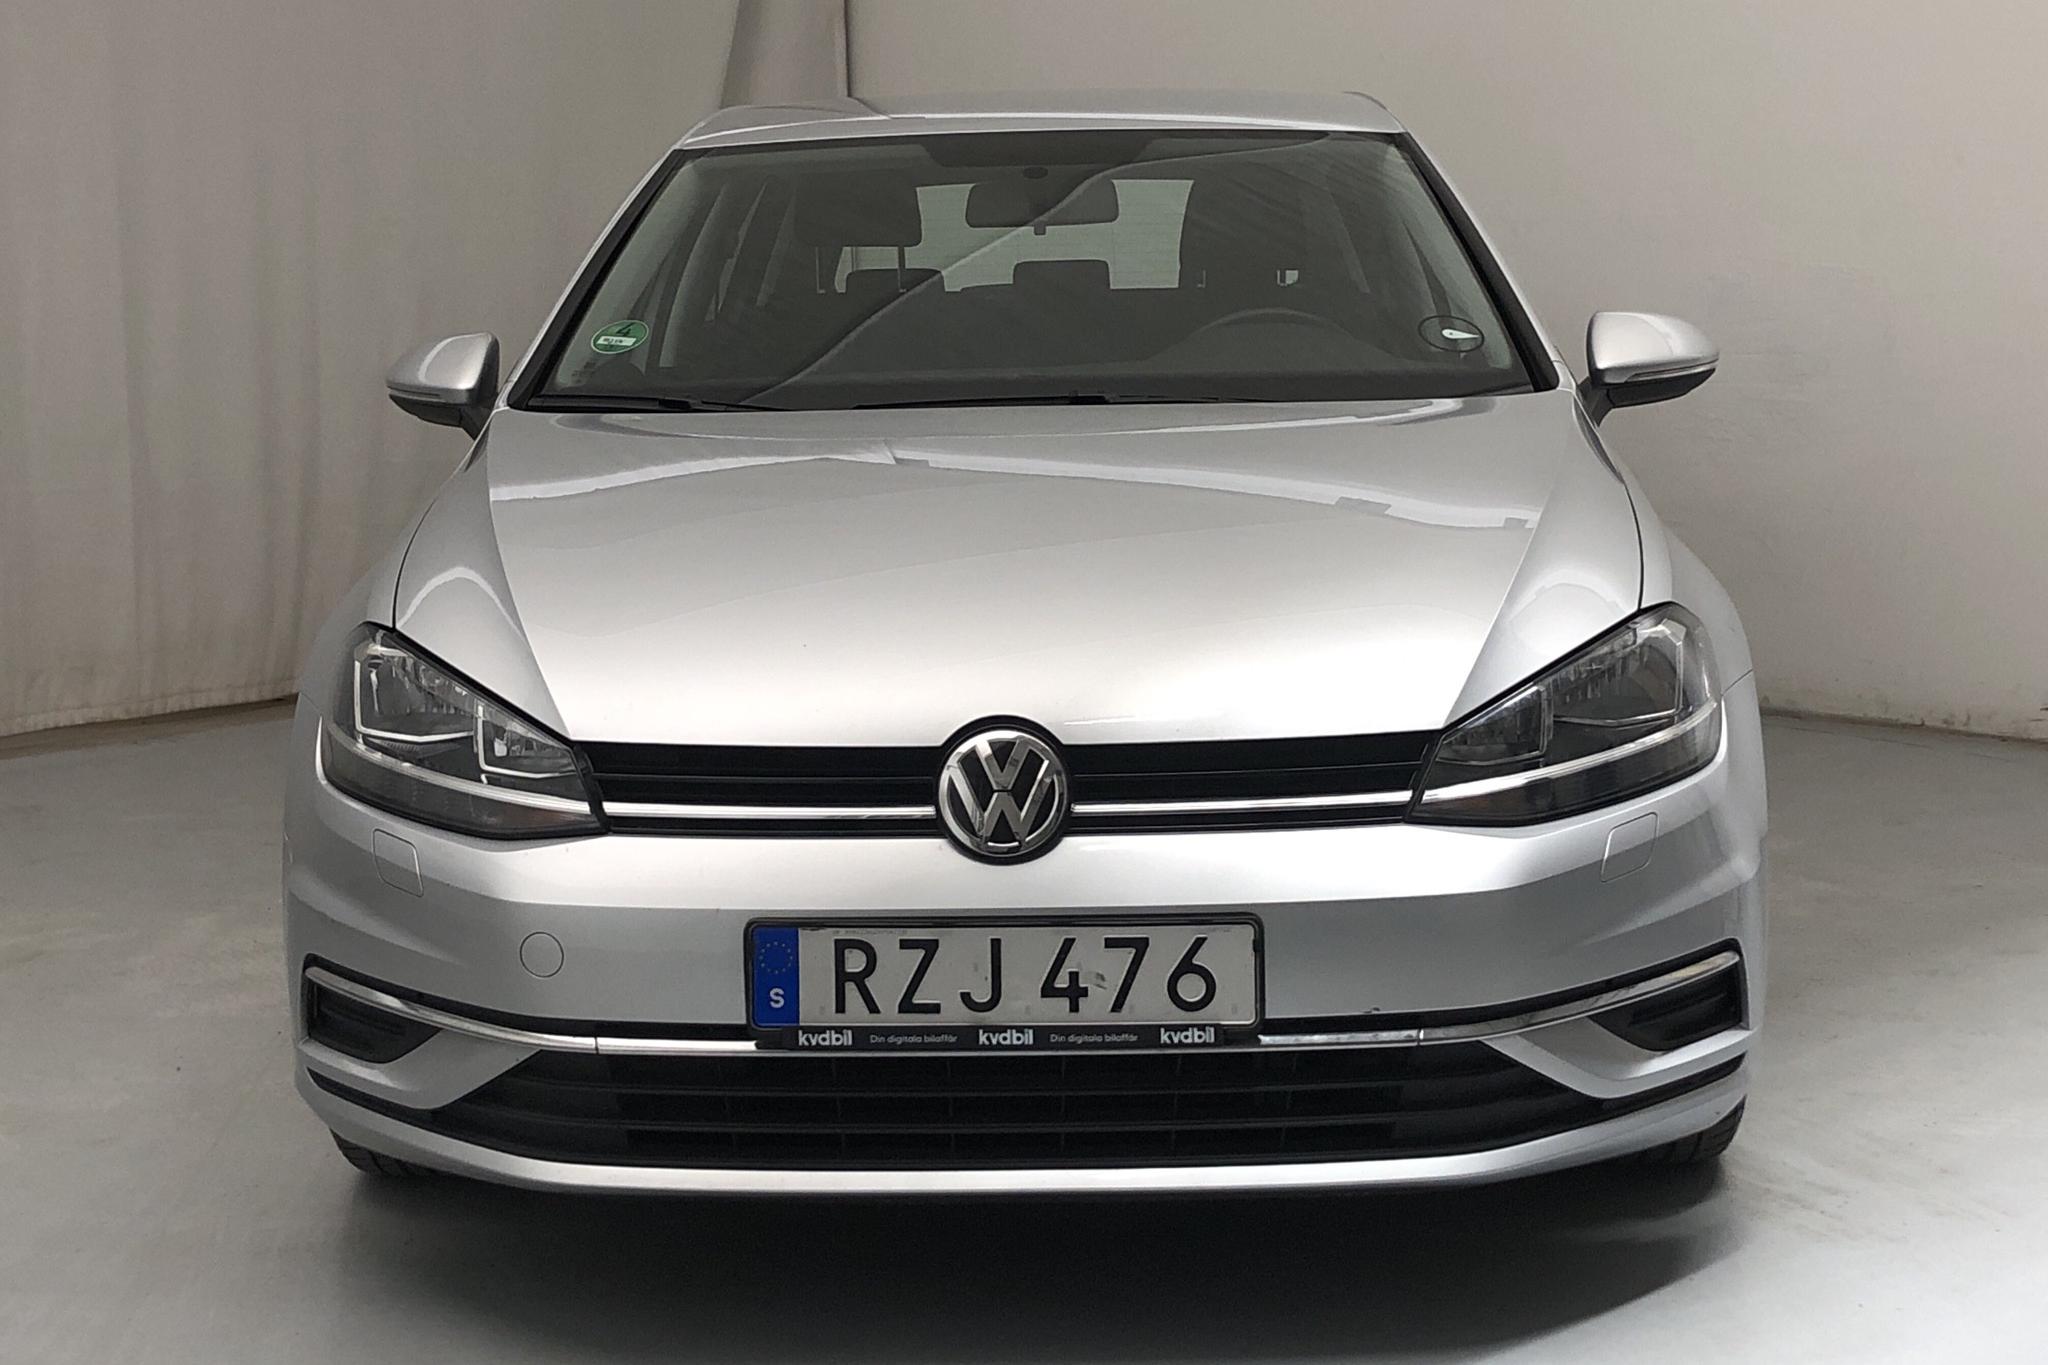 VW Golf VII 1.0 TSI 5dr (115hk) - 48 740 km - Manual - silver - 2019